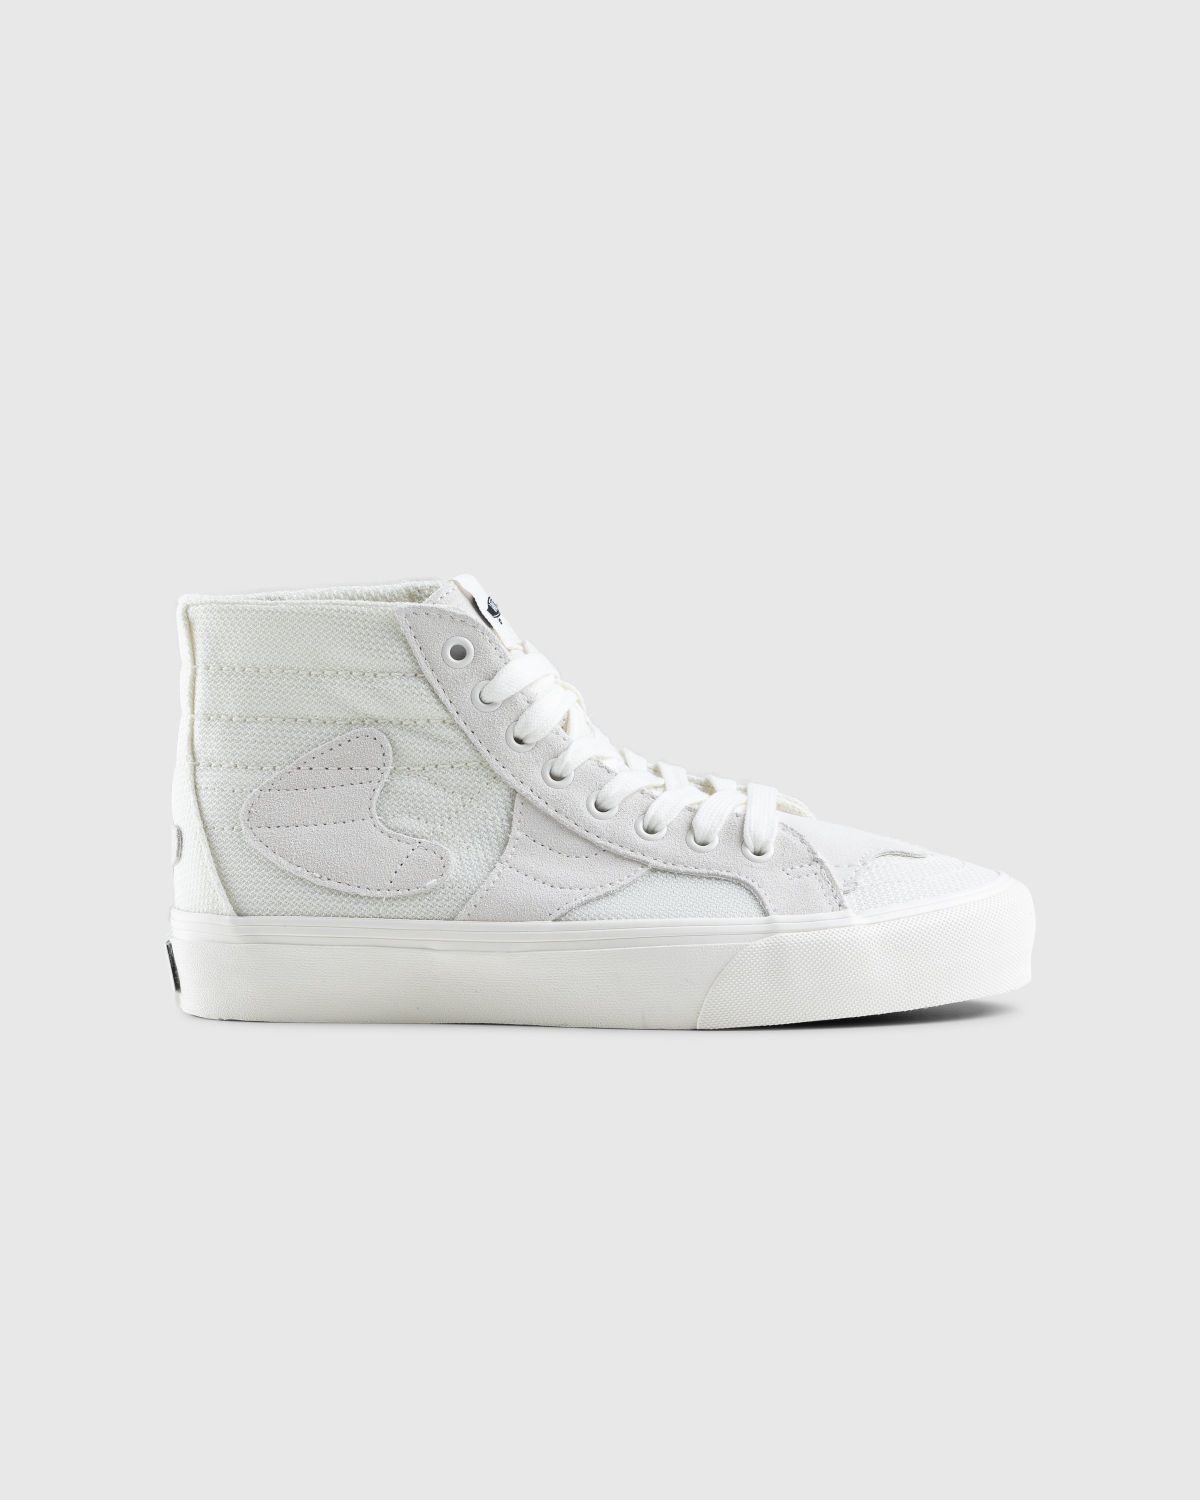 Vans – Sk8-Hi WP VR3 LX White - Sneakers - Beige - Image 1